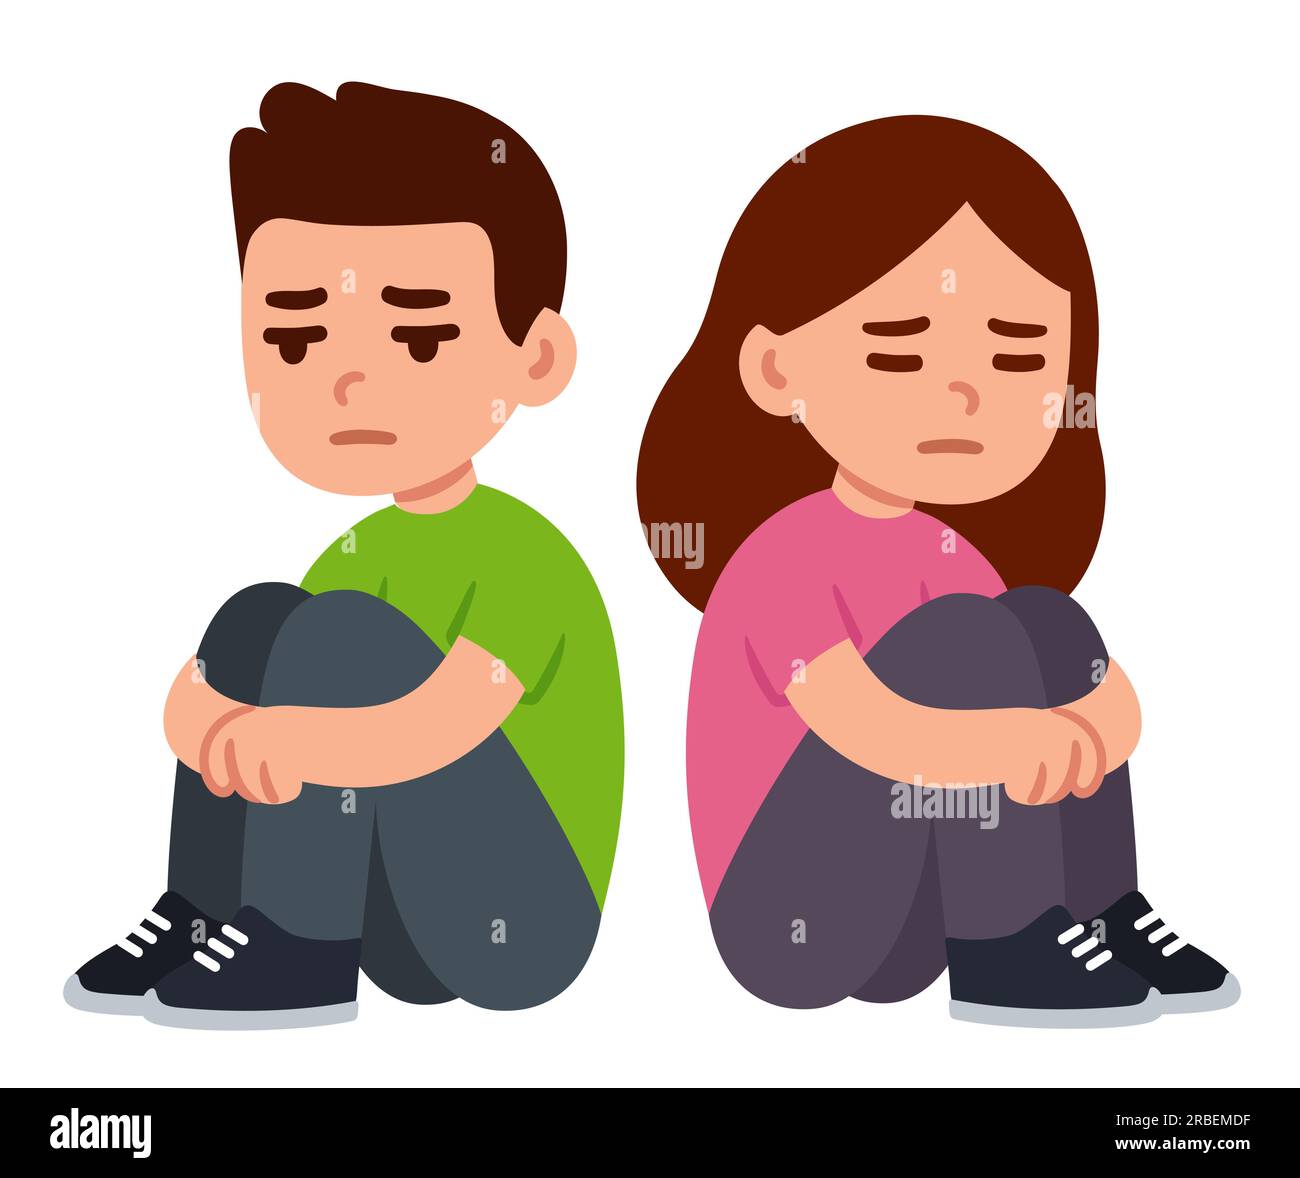 Trauriger, depressiver Teenager, Junge und Mädchen, die auf dem Boden sitzen und die Knie umarmen. Einfache flache Zeichentrickzeichnung. Psychische Gesundheit Vektor-Clip-Art-Illustration. Stock Vektor